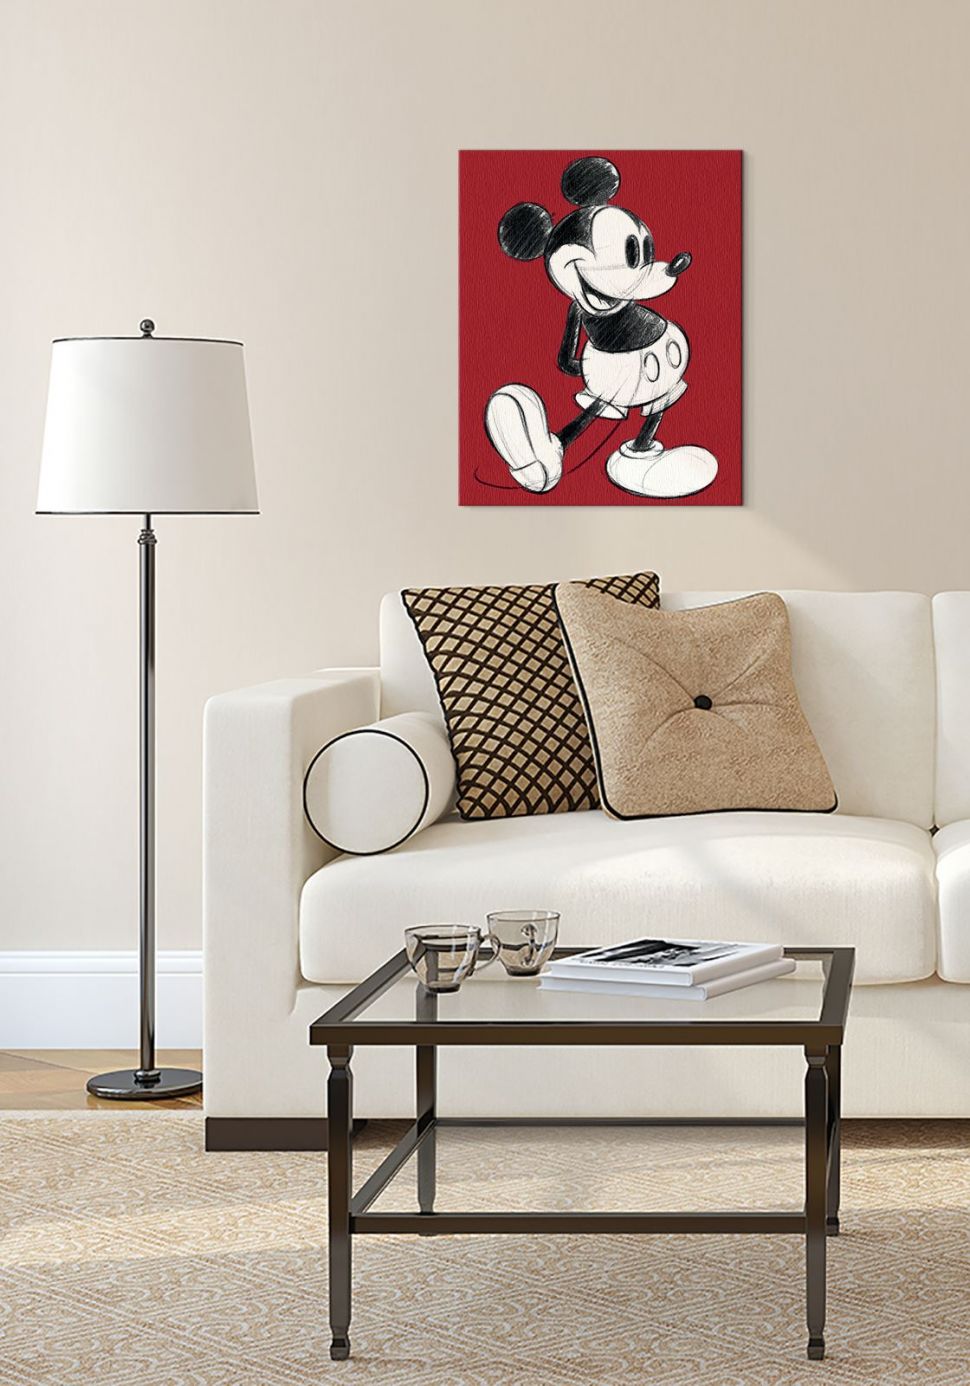 Obraz z Myszką Miki w stylu retro na czerwonym tle zawieszony w salonie nad dużą białą kanapą obok lampy